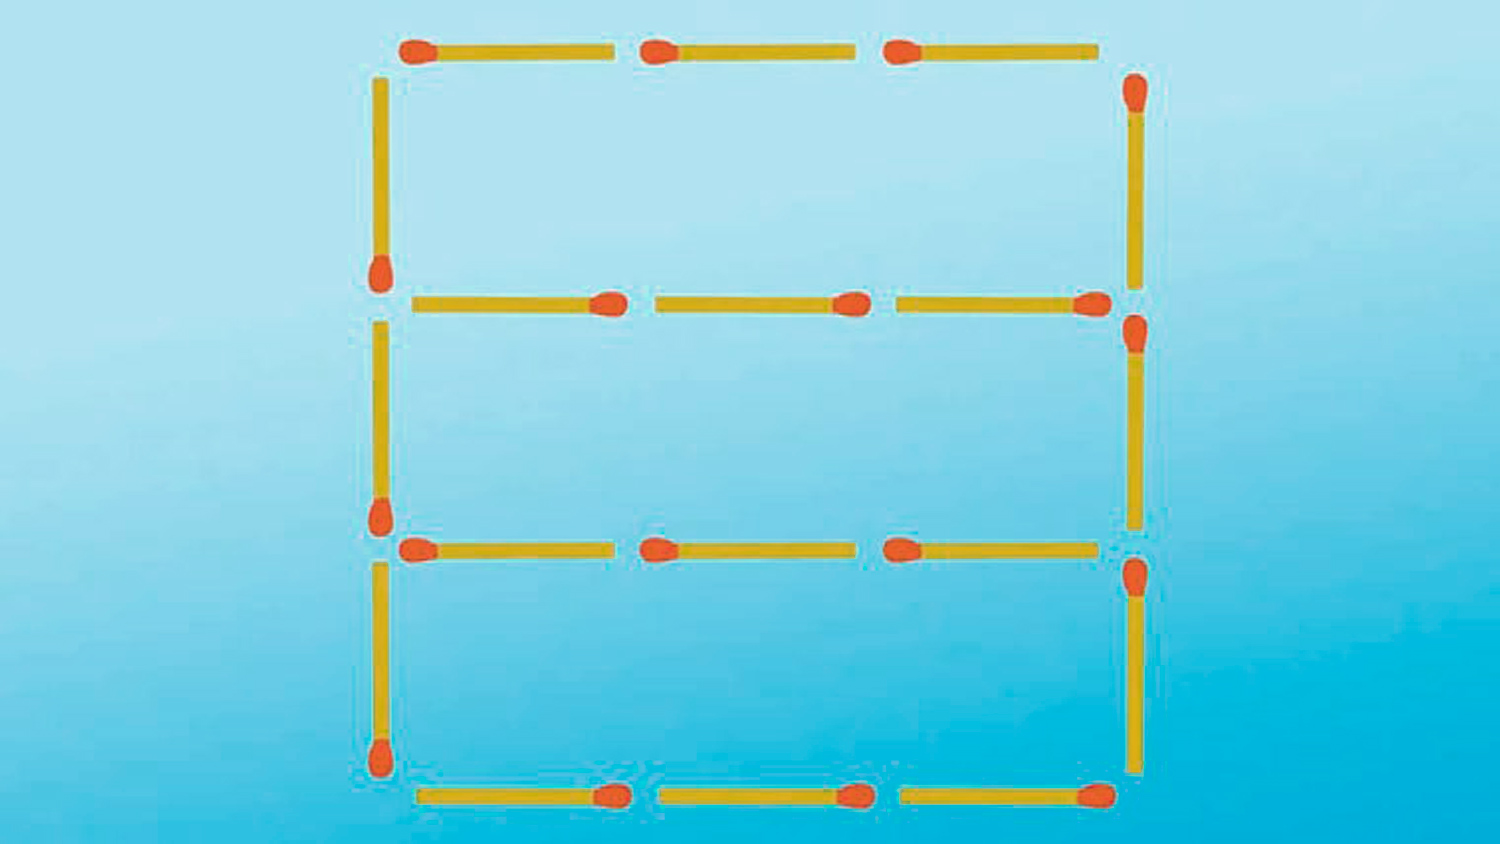 Test de coeficiente intelectual: debes mover 5 cerillas para crear 6 cuadrados en menos de 30 segundos